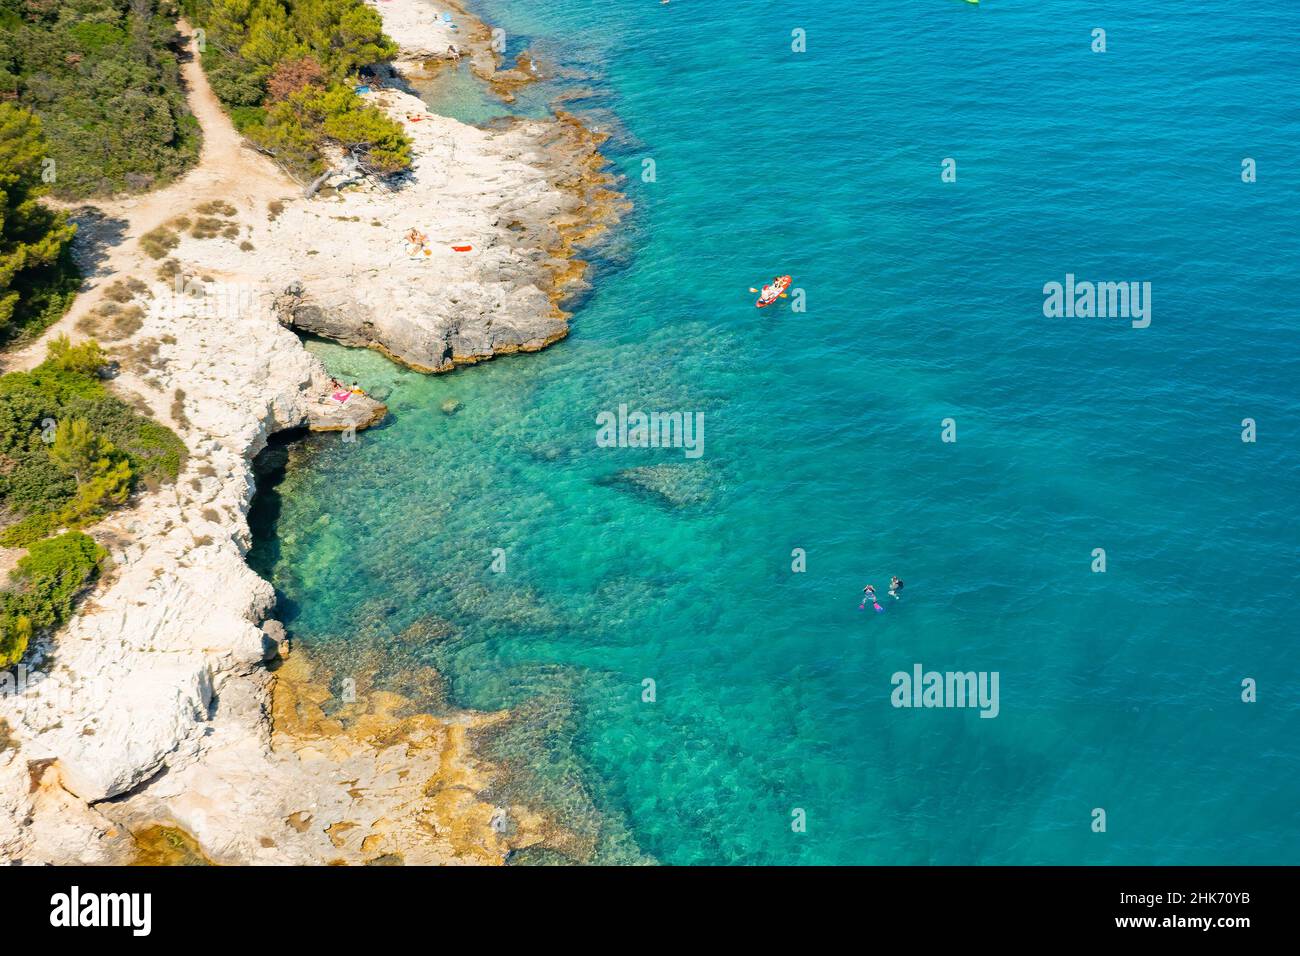 Vista dall'alto di sportivi o turisti in kayak nelle acque turchesi blu trasparente della costa rocciosa del mare Adriatico. Attività di svago estiva in canoa. Foto Stock